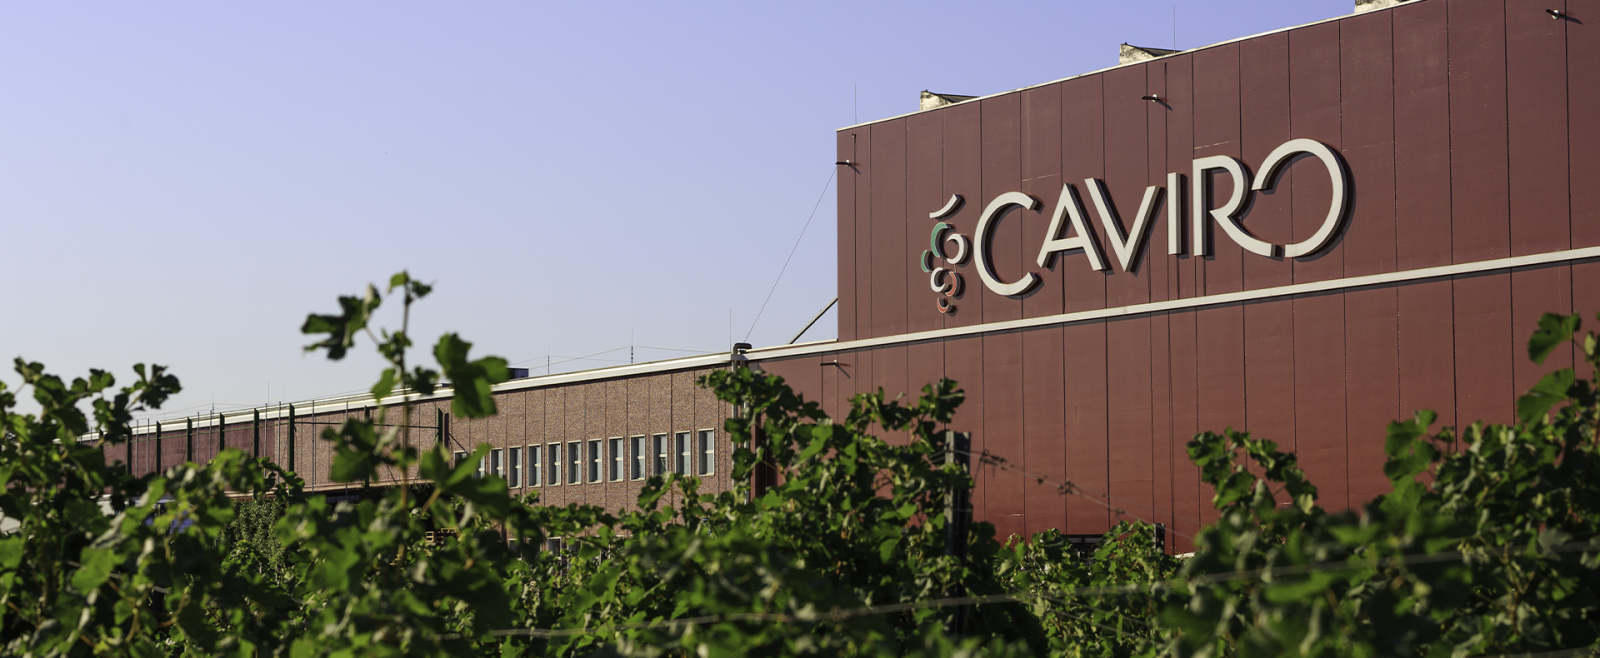 Nhà sản xuất rượu Carivo